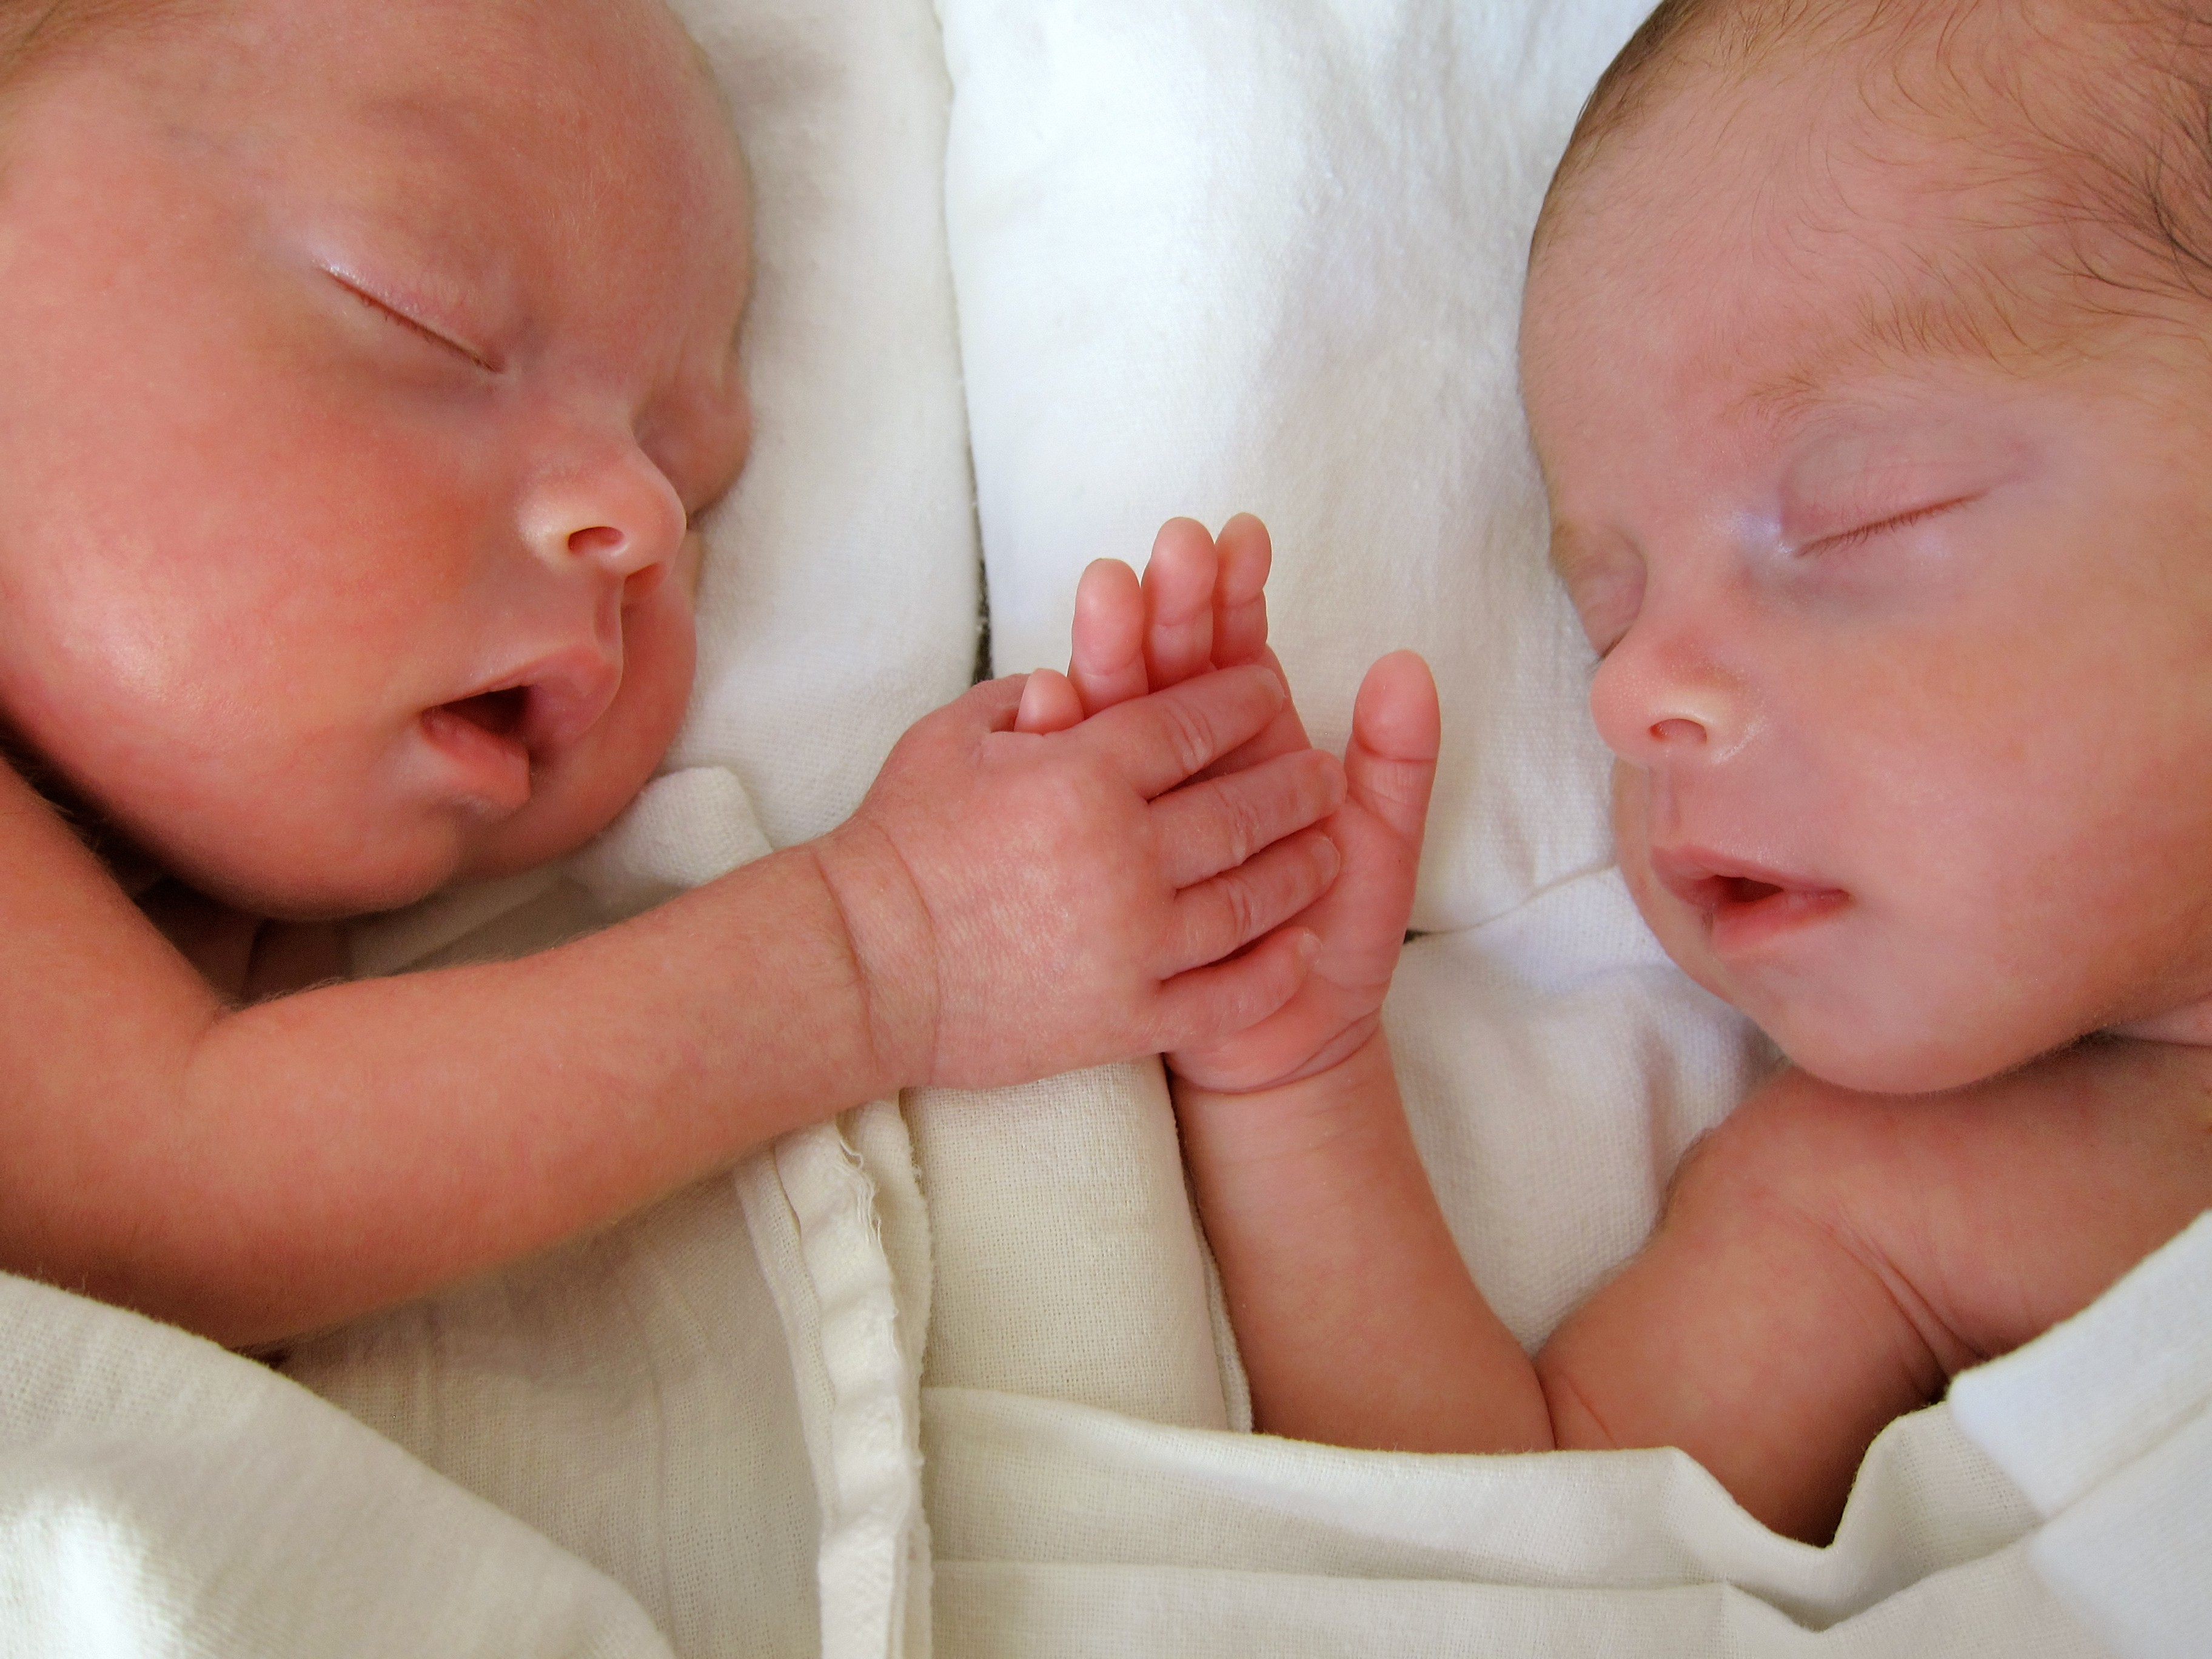 Gêmeos recém-nascidos (Foto:  Viorika/Getty Images)